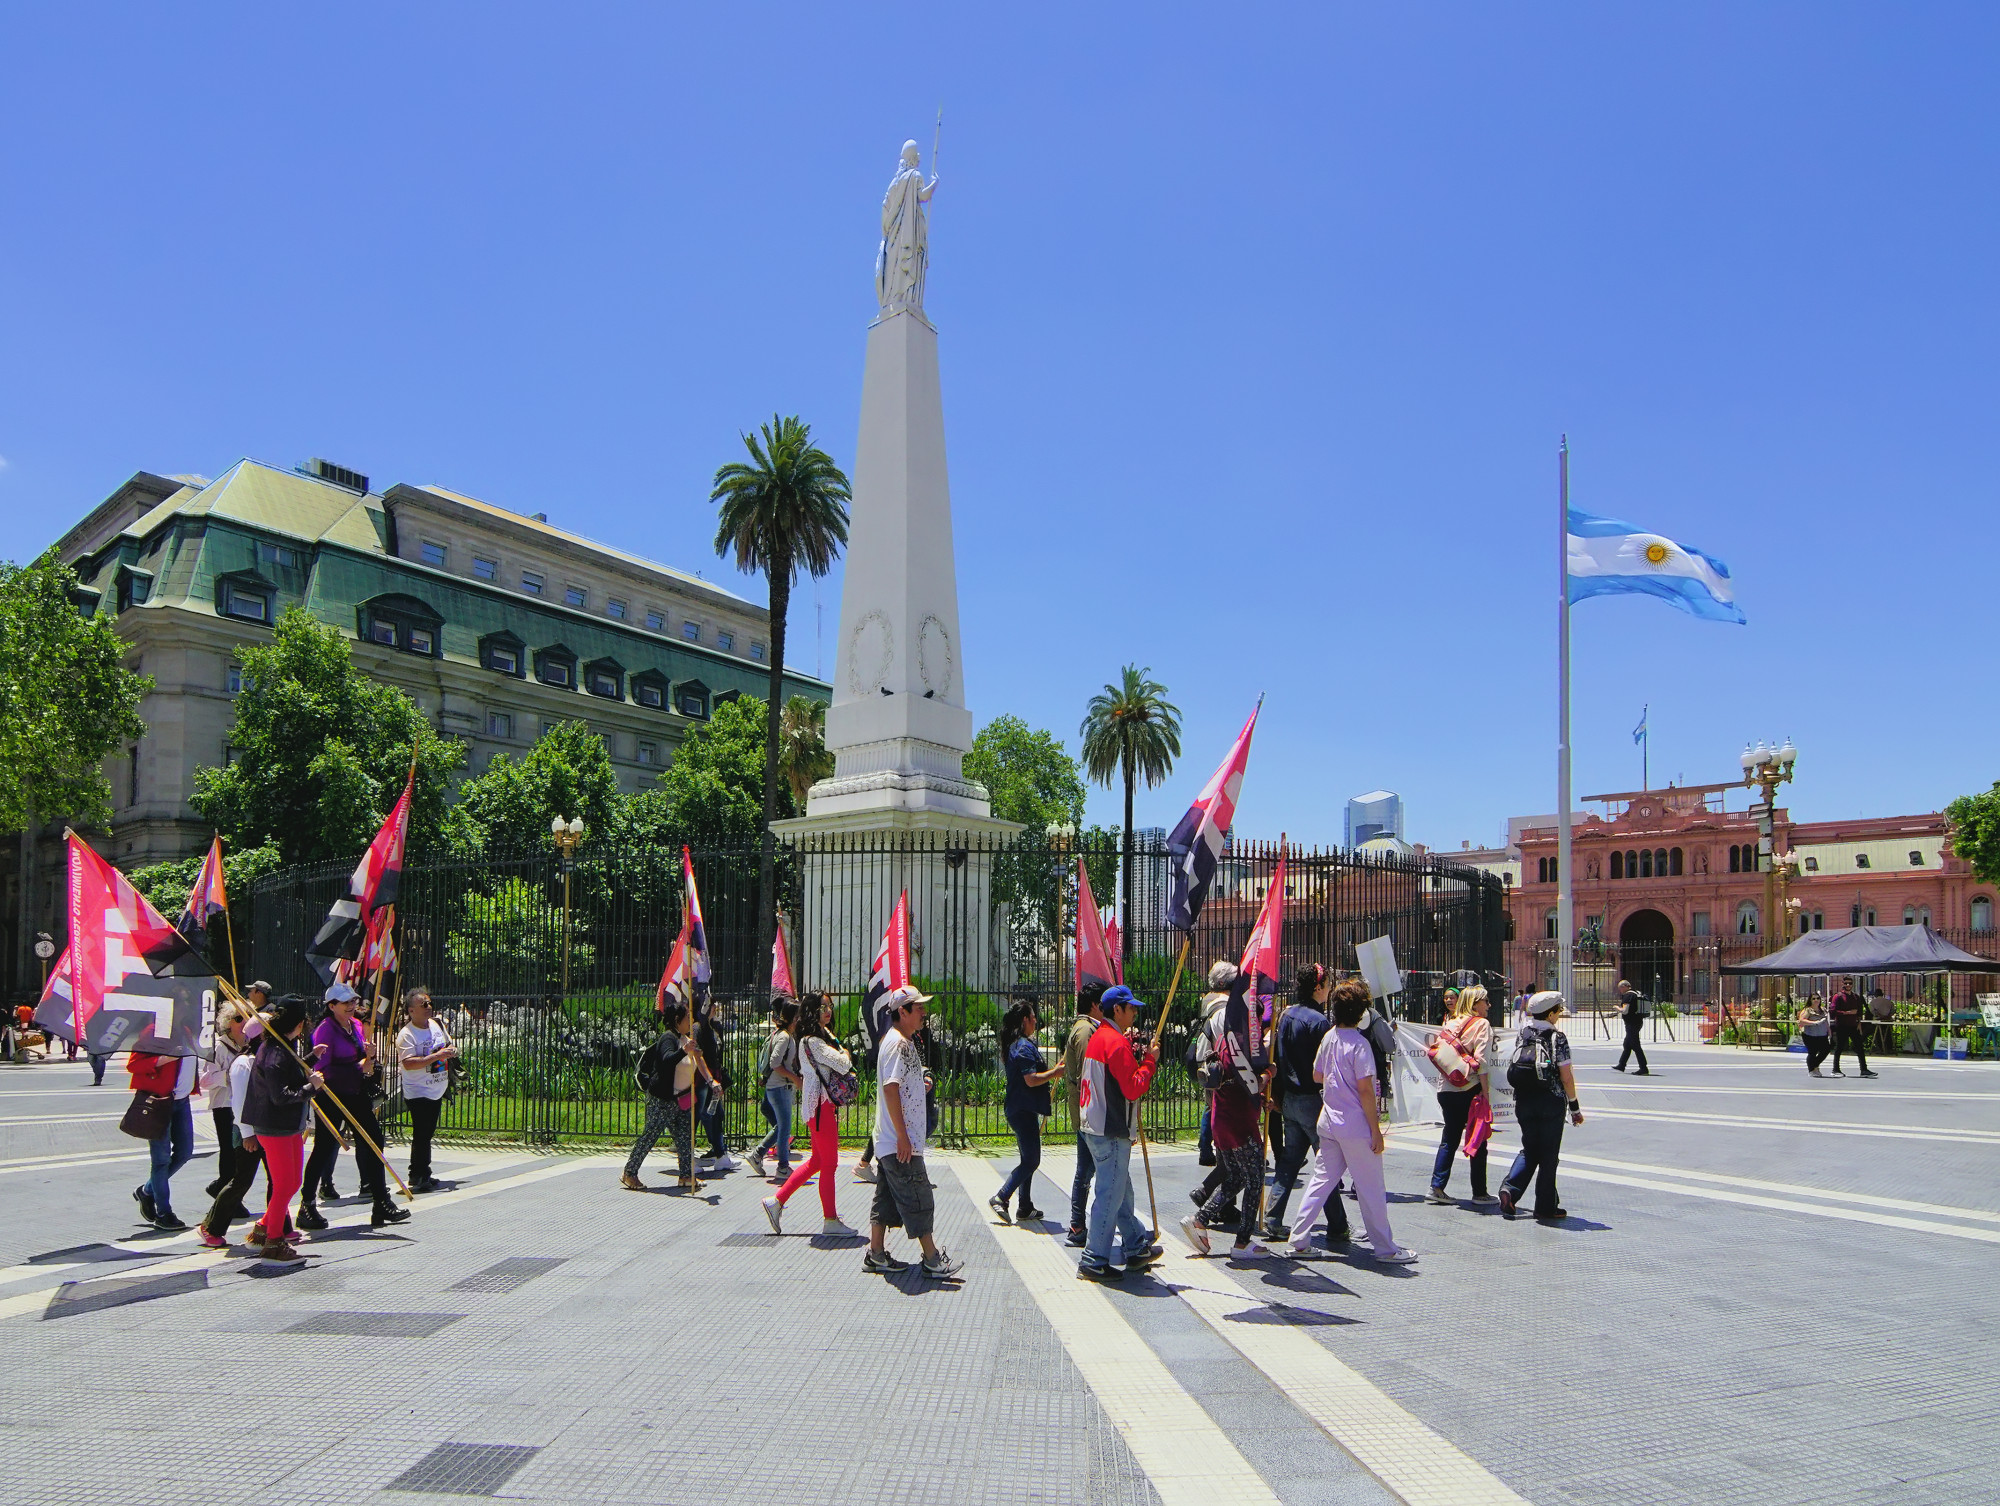 Площадь Мая (исп. Plaza de Mayo) — центральная площадь столицы Аргентины. Расположена между улицами Иполито Иригоена, Балькарсе, Ривадавия и Боливара. Существует с 1580 года и является местом, с которого начал отстраиваться Буэнос-Айрес. В 1810 году на площади происходили главные события Майской революции, в честь которой она была названа. 13 сентября 1816 года на Майской площади была провозглашена независимость Аргентины, а 21 октября 1860 года — было объявлено о принятии конституции Аргентины. Свой современный вид площадь приобрела в 1884 году, после сноса Старой Галереи и объединения двух площадей, которые были на этом месте раньше.<br/>
